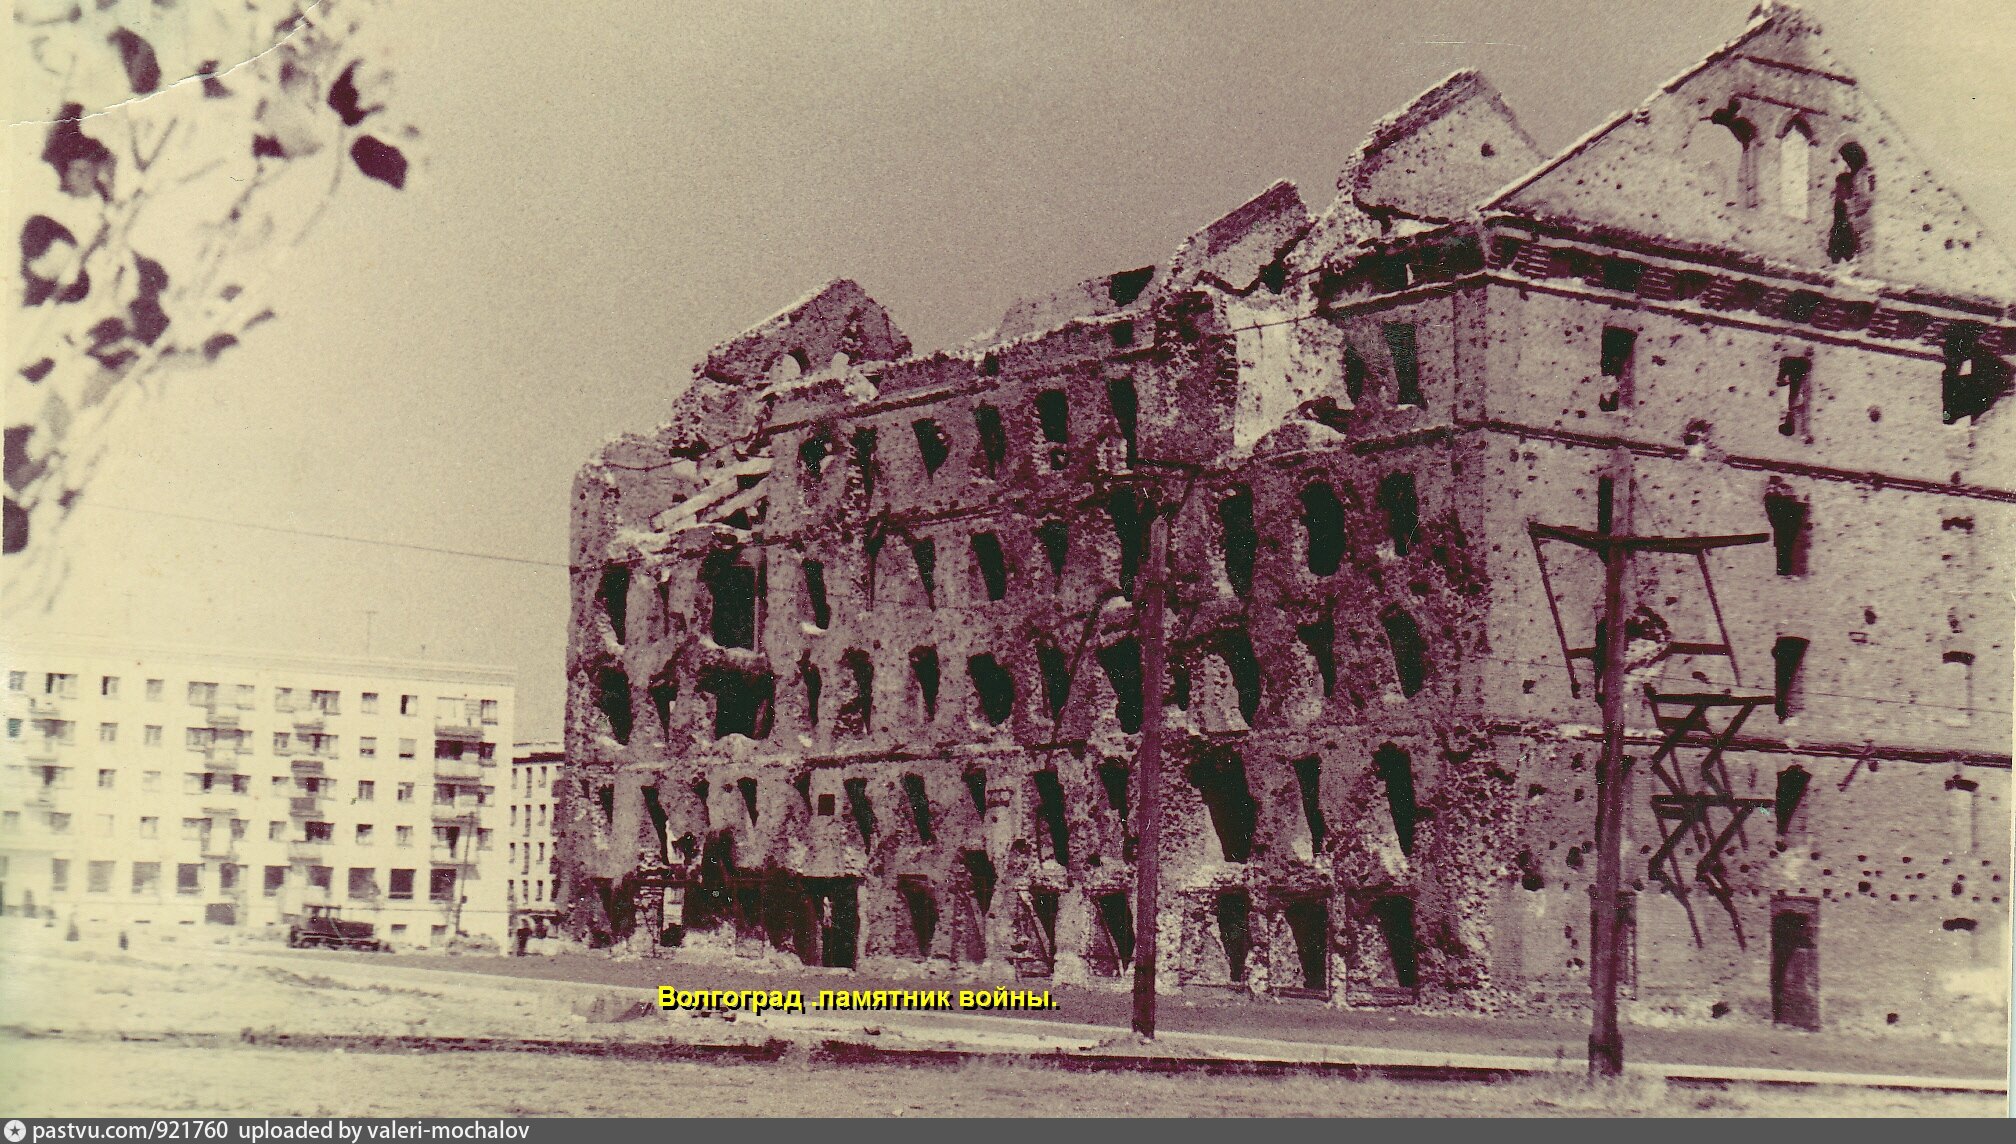 Фото дом павлова во время войны